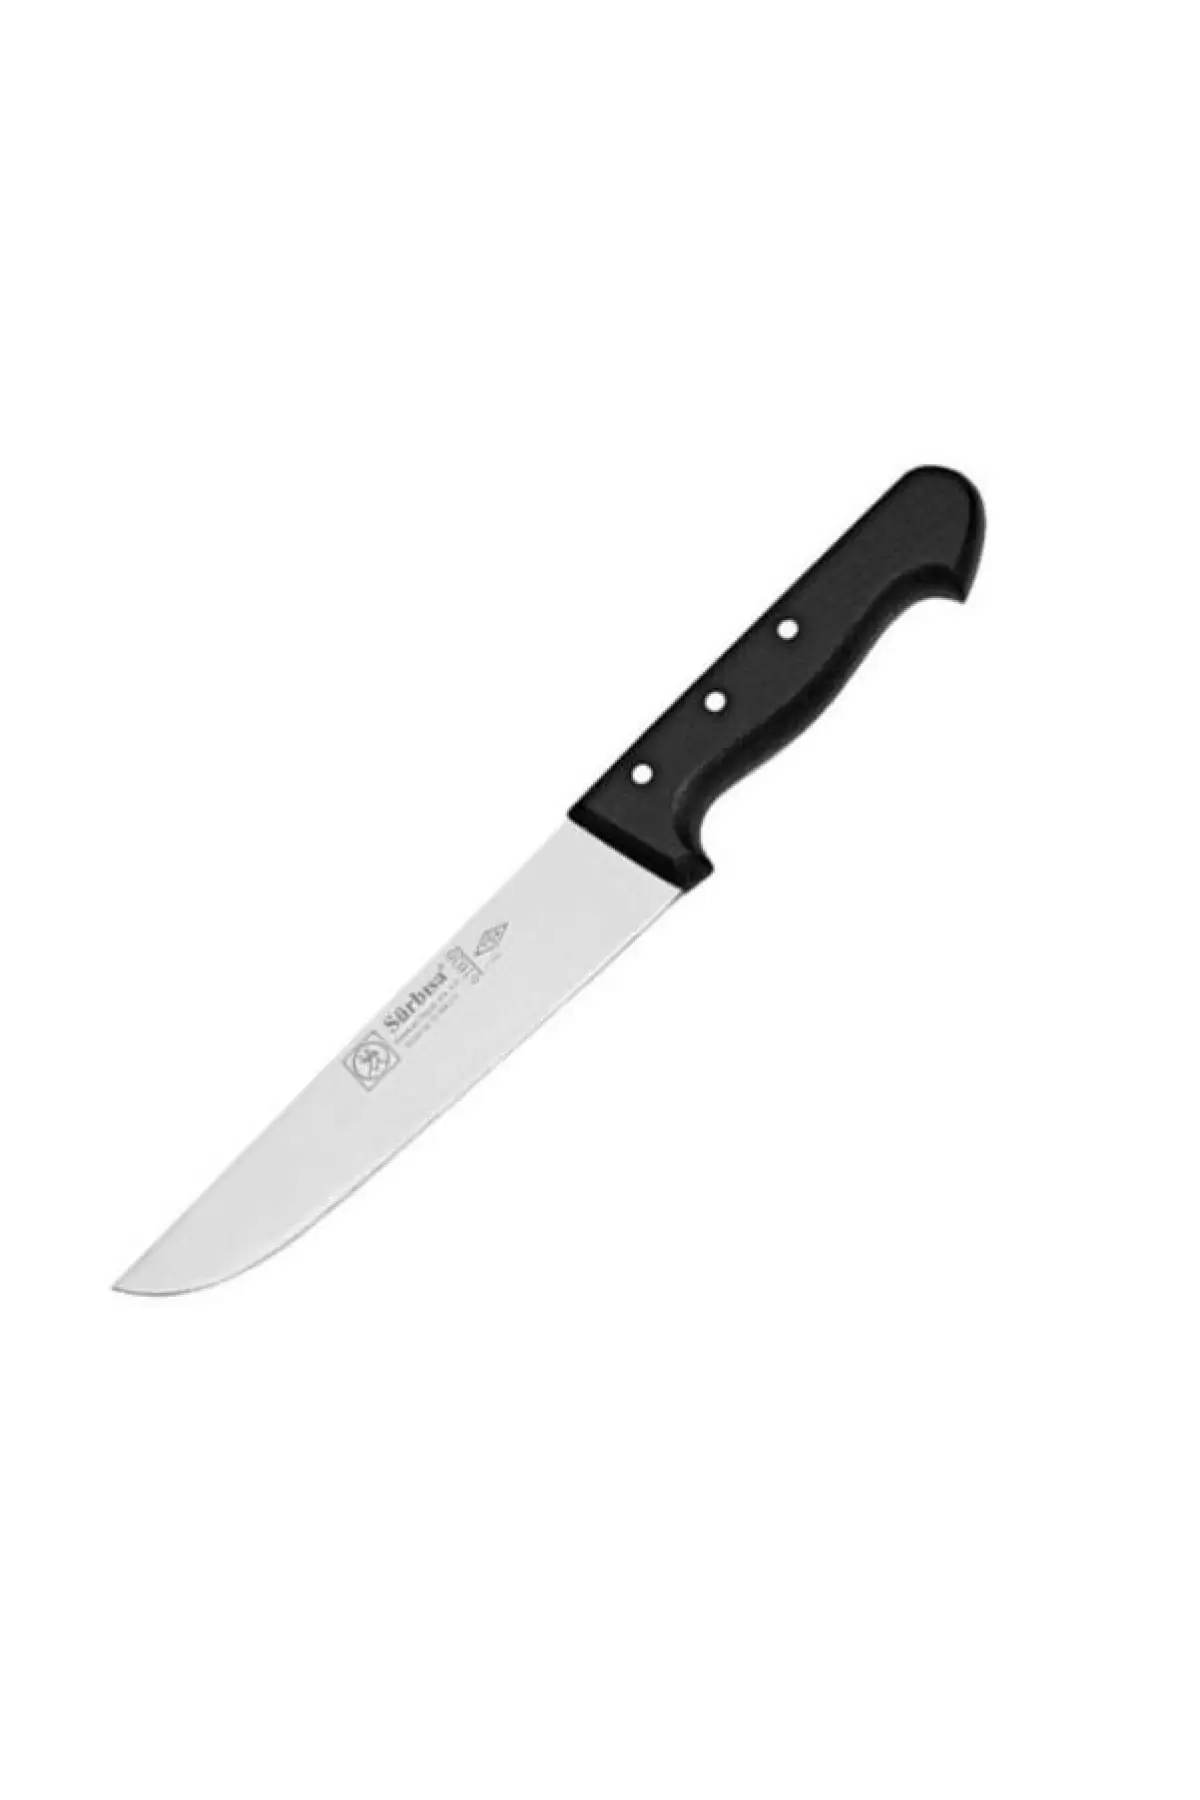 Sürbisa 61030 Mutfak Bıçağı 18.5 Cm 